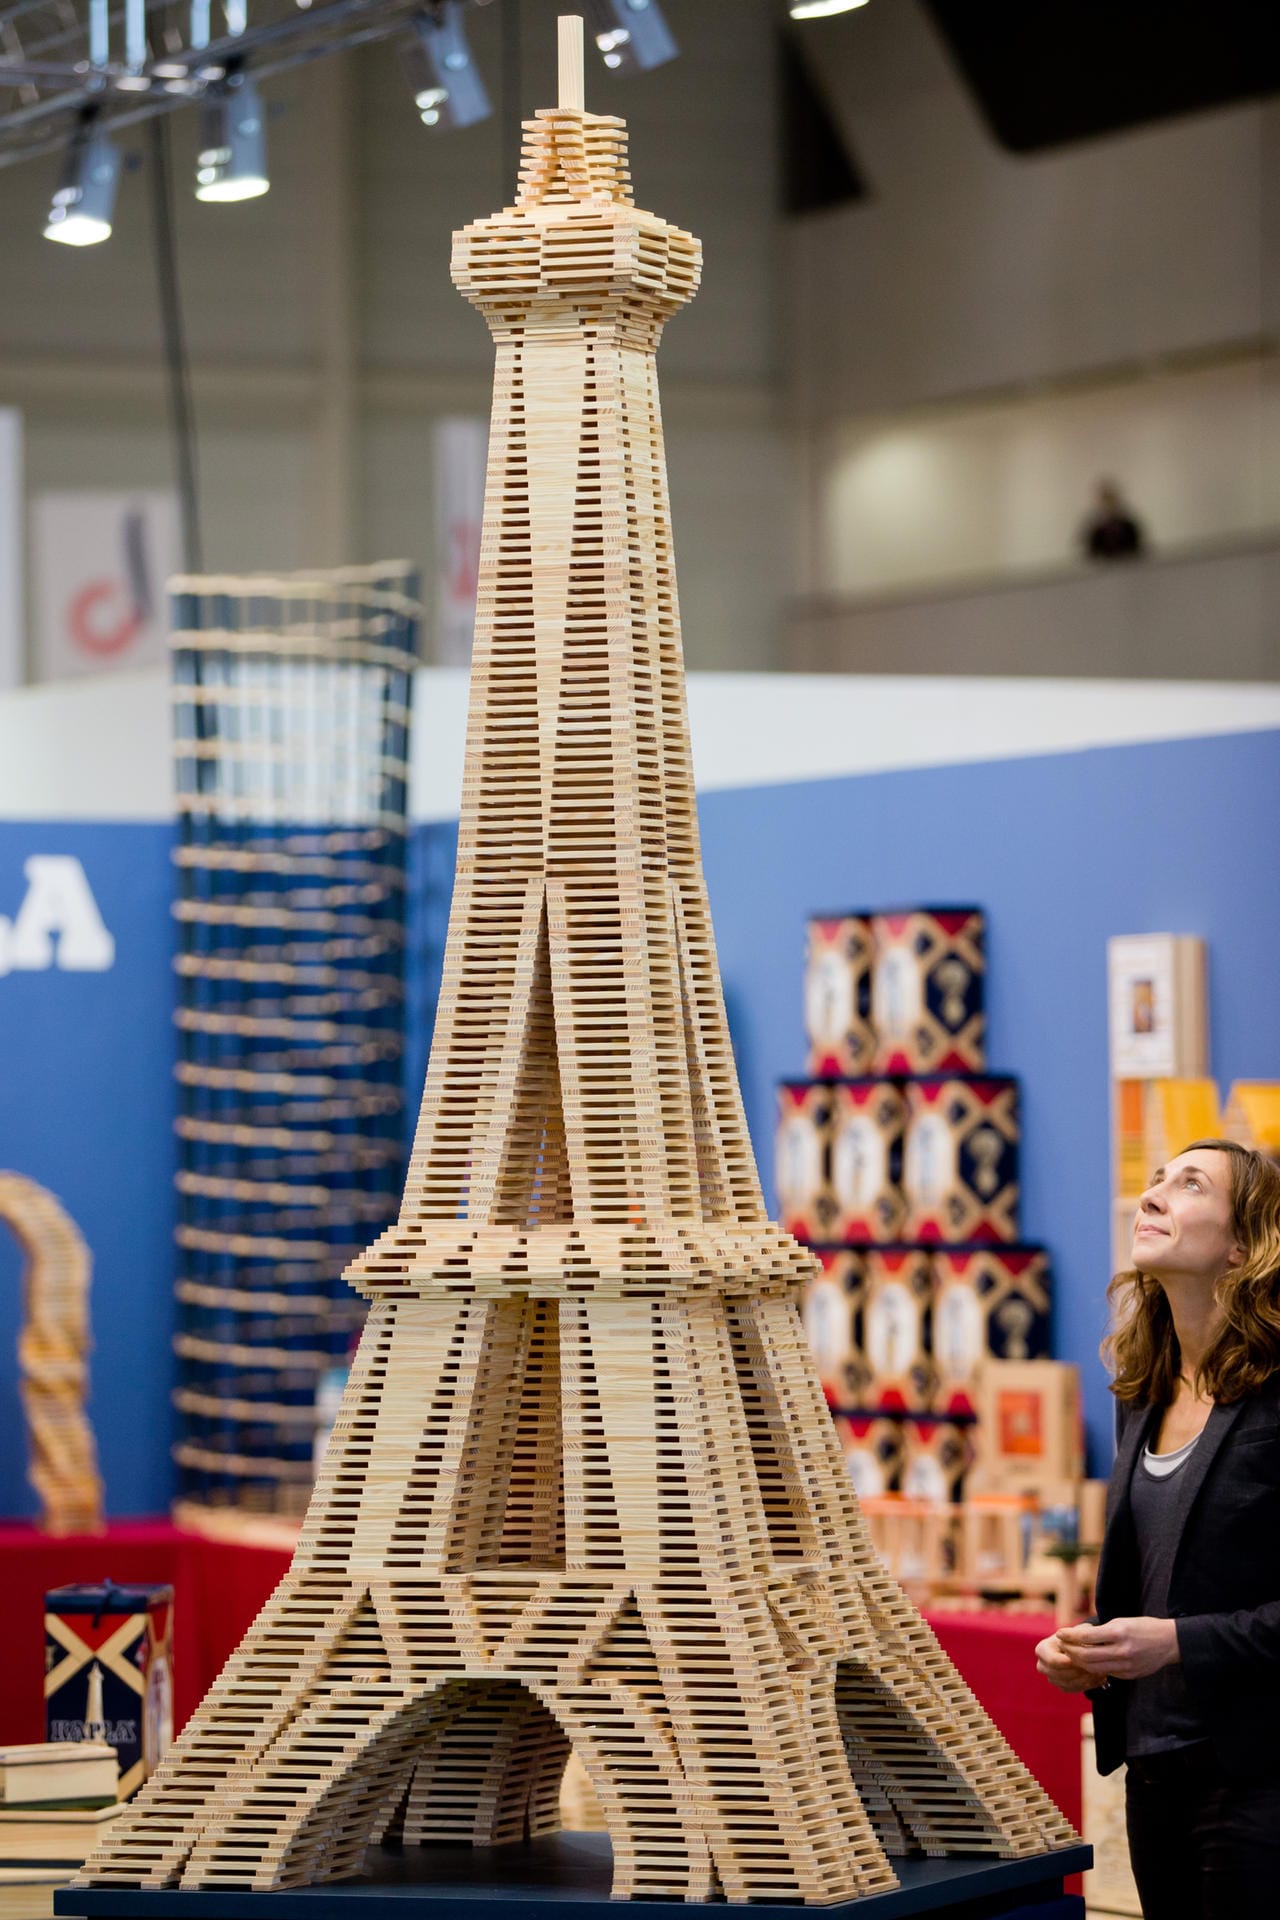 Spielwarenmesse 2016: Holznachbau des Eiffelturms von Kapla